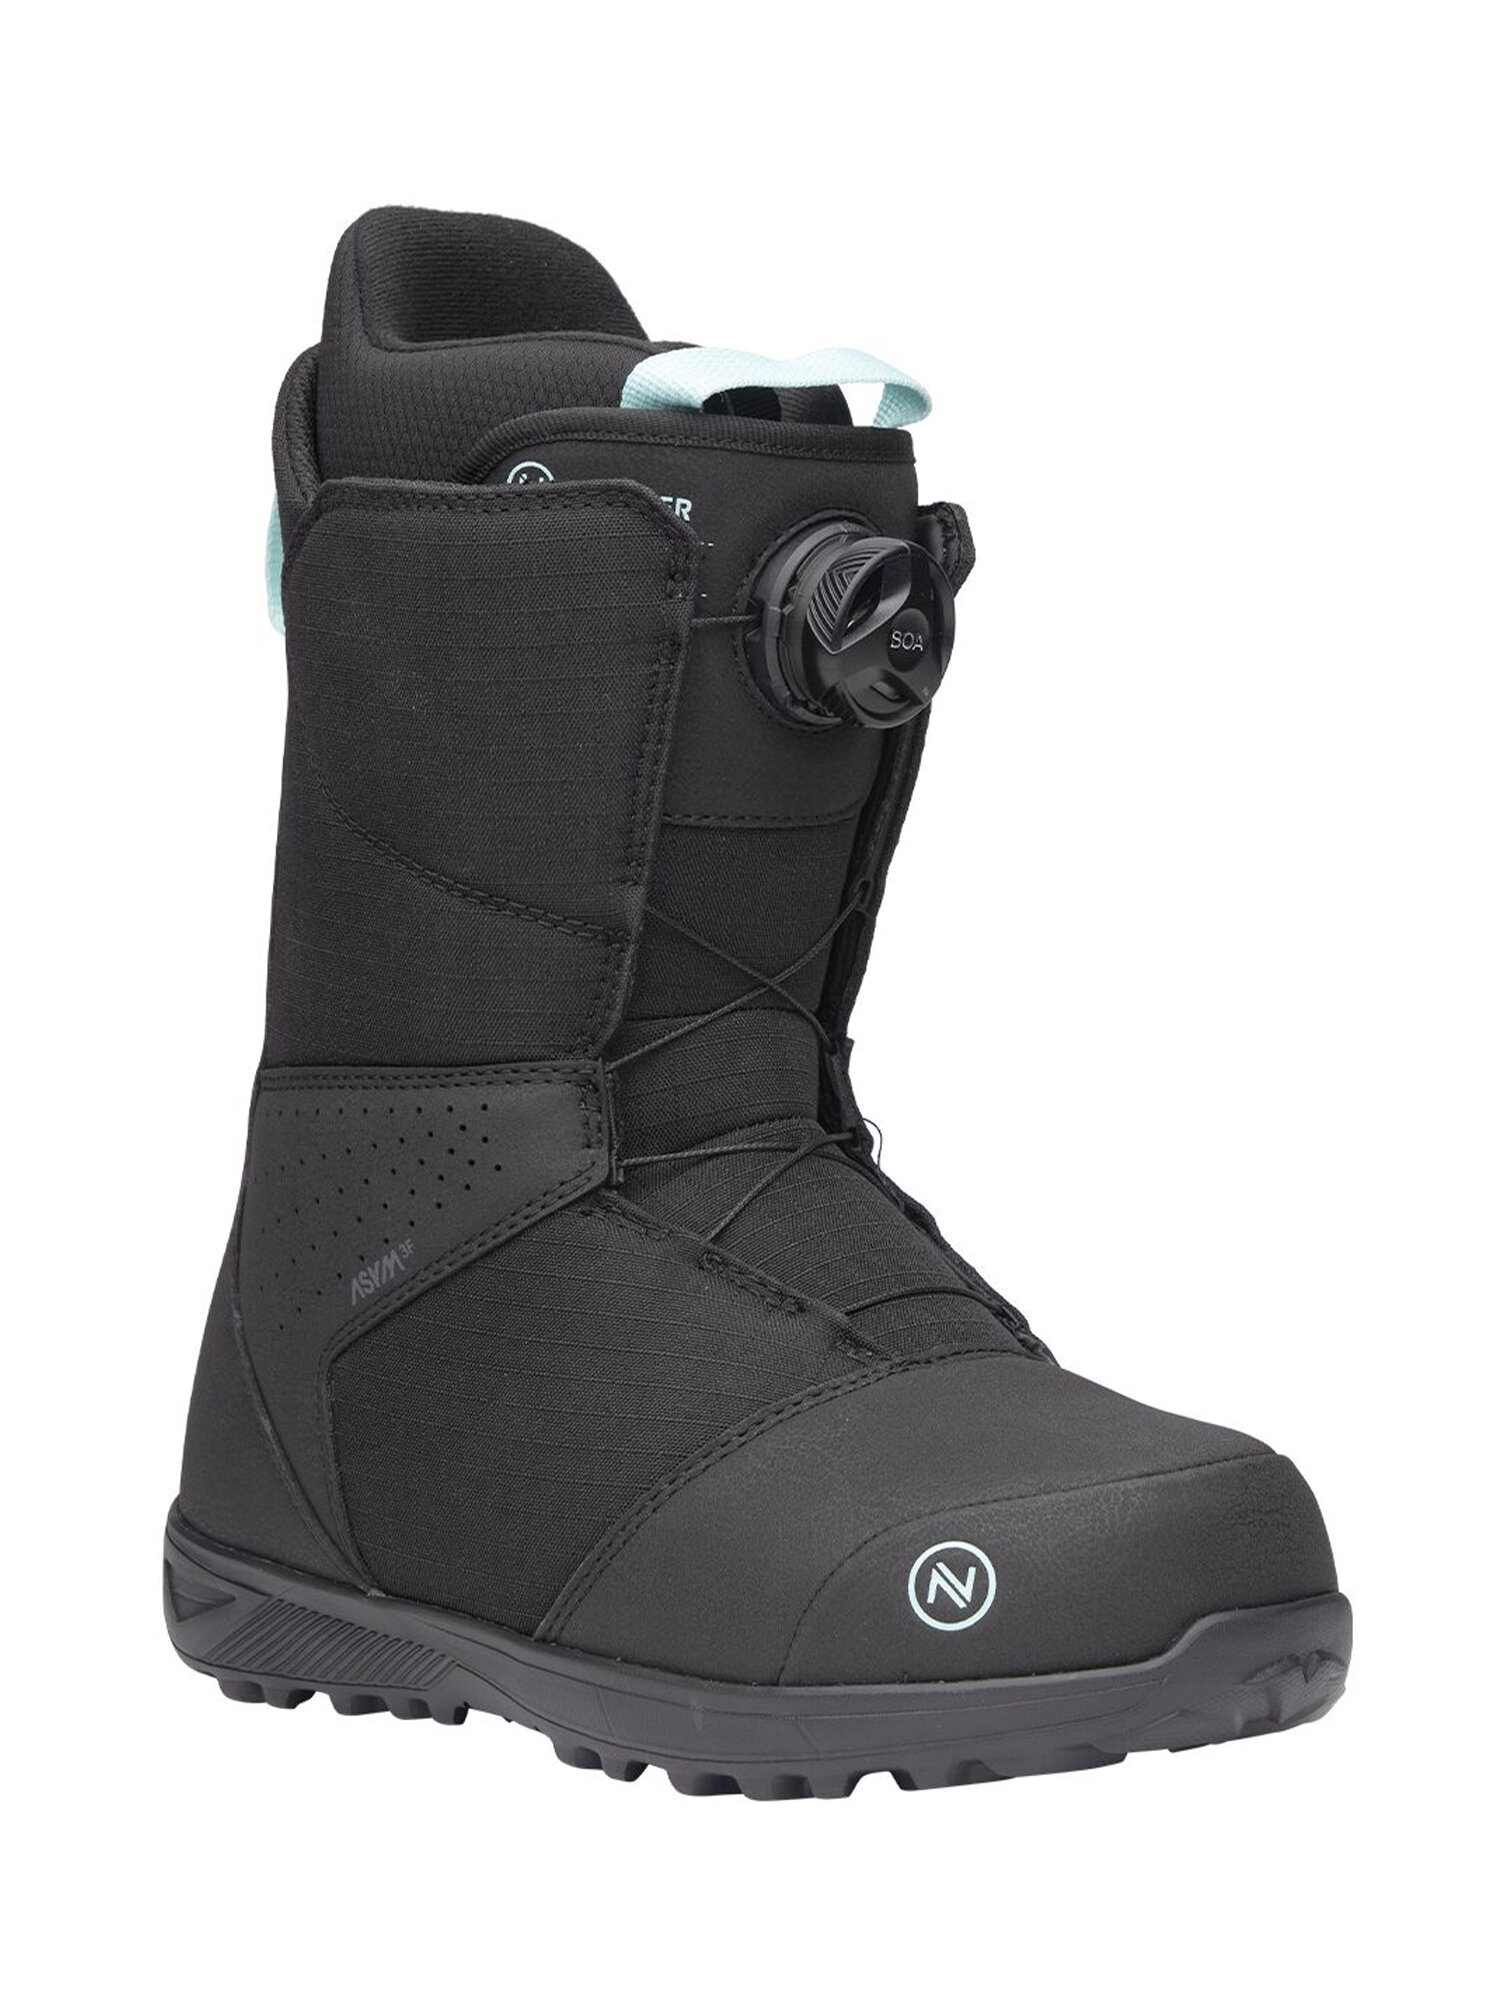 Ботинки для сноуборда NIDECKER Sierra W Black (US:6,5)